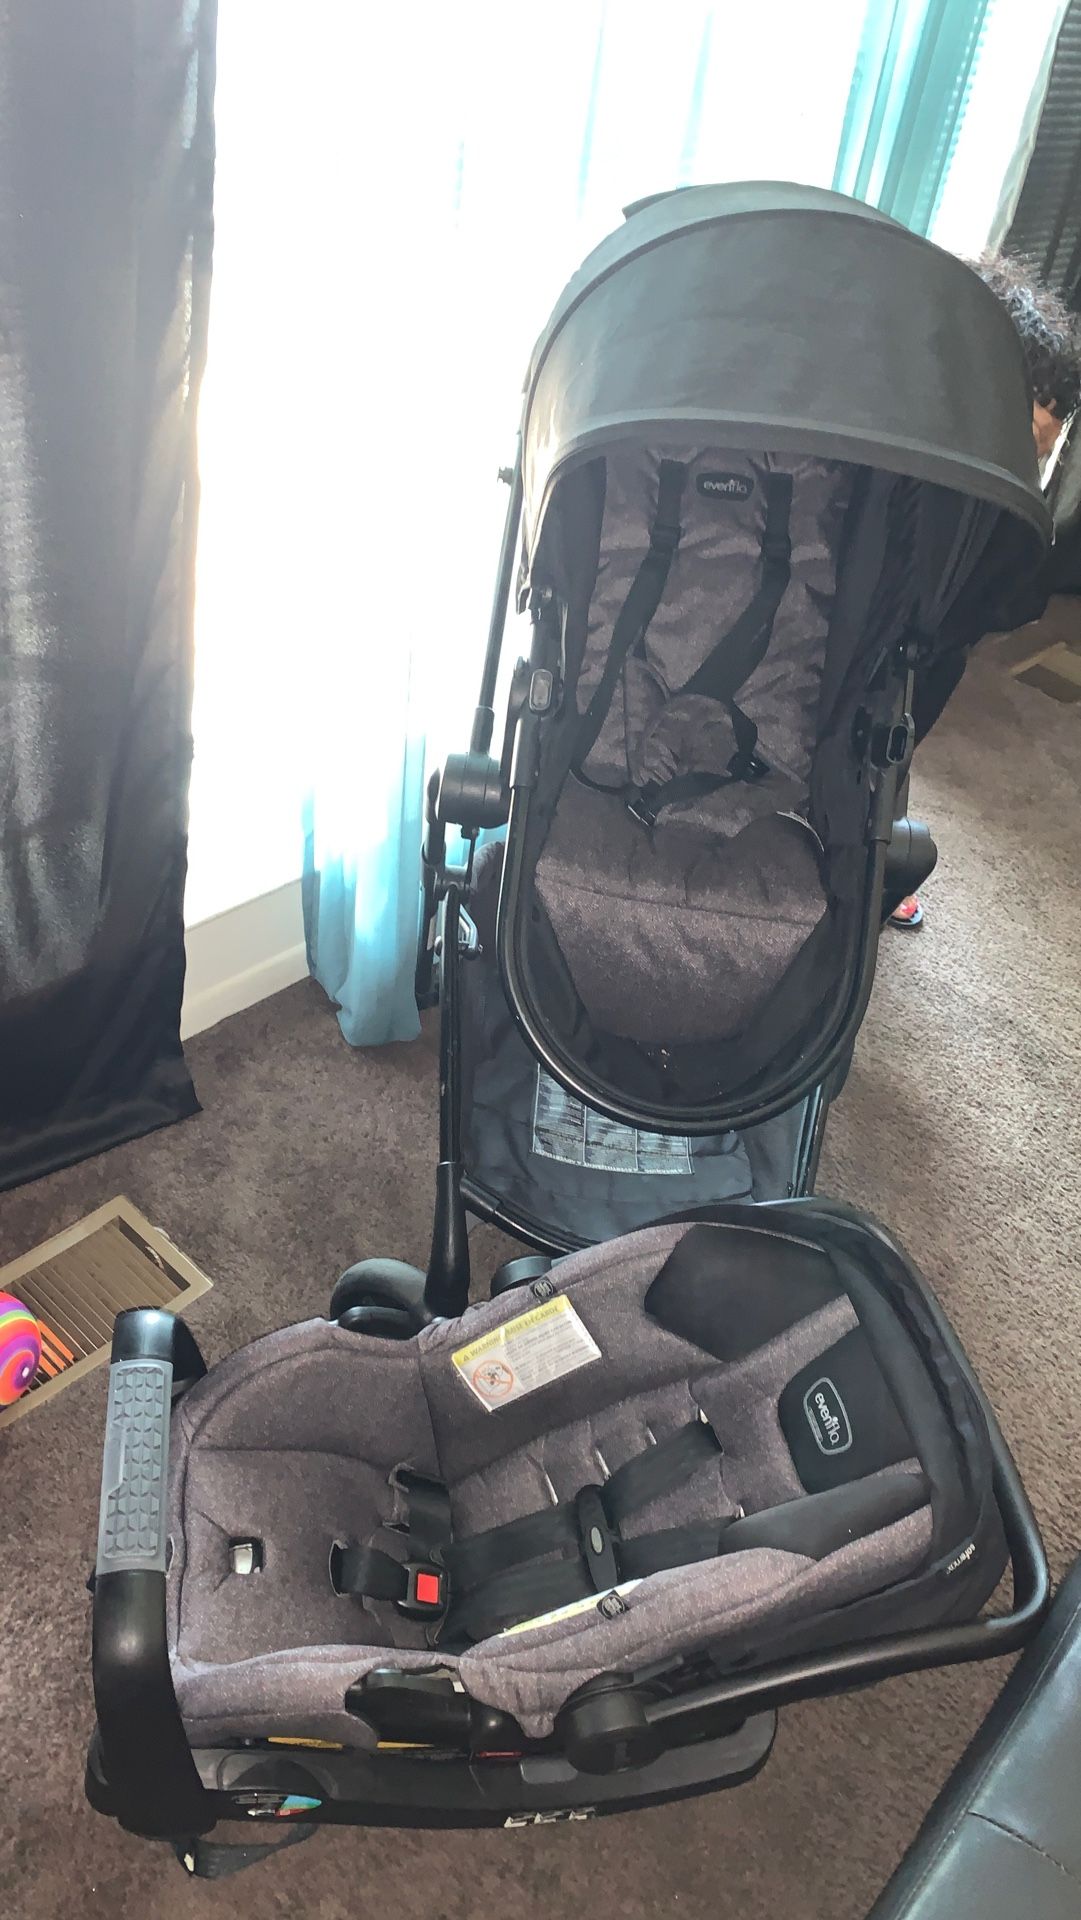 Evenflo car seat and stroller bundle set /bassinet